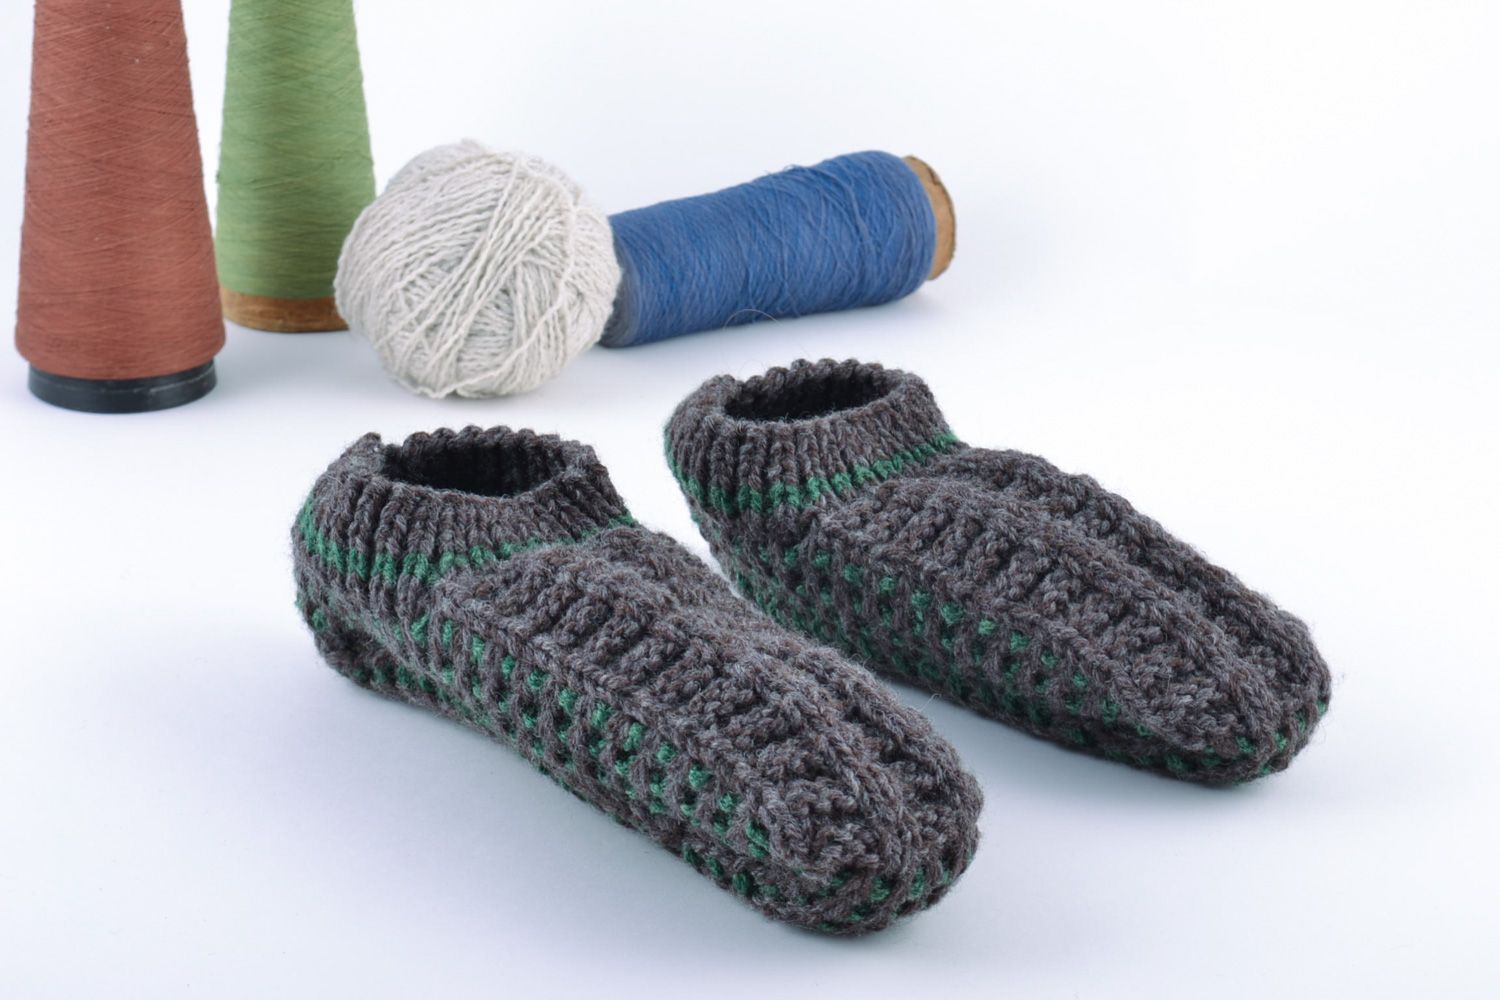 Pantuflas tejidas artesanales zapatillas de casa originales cálidas grises foto 1